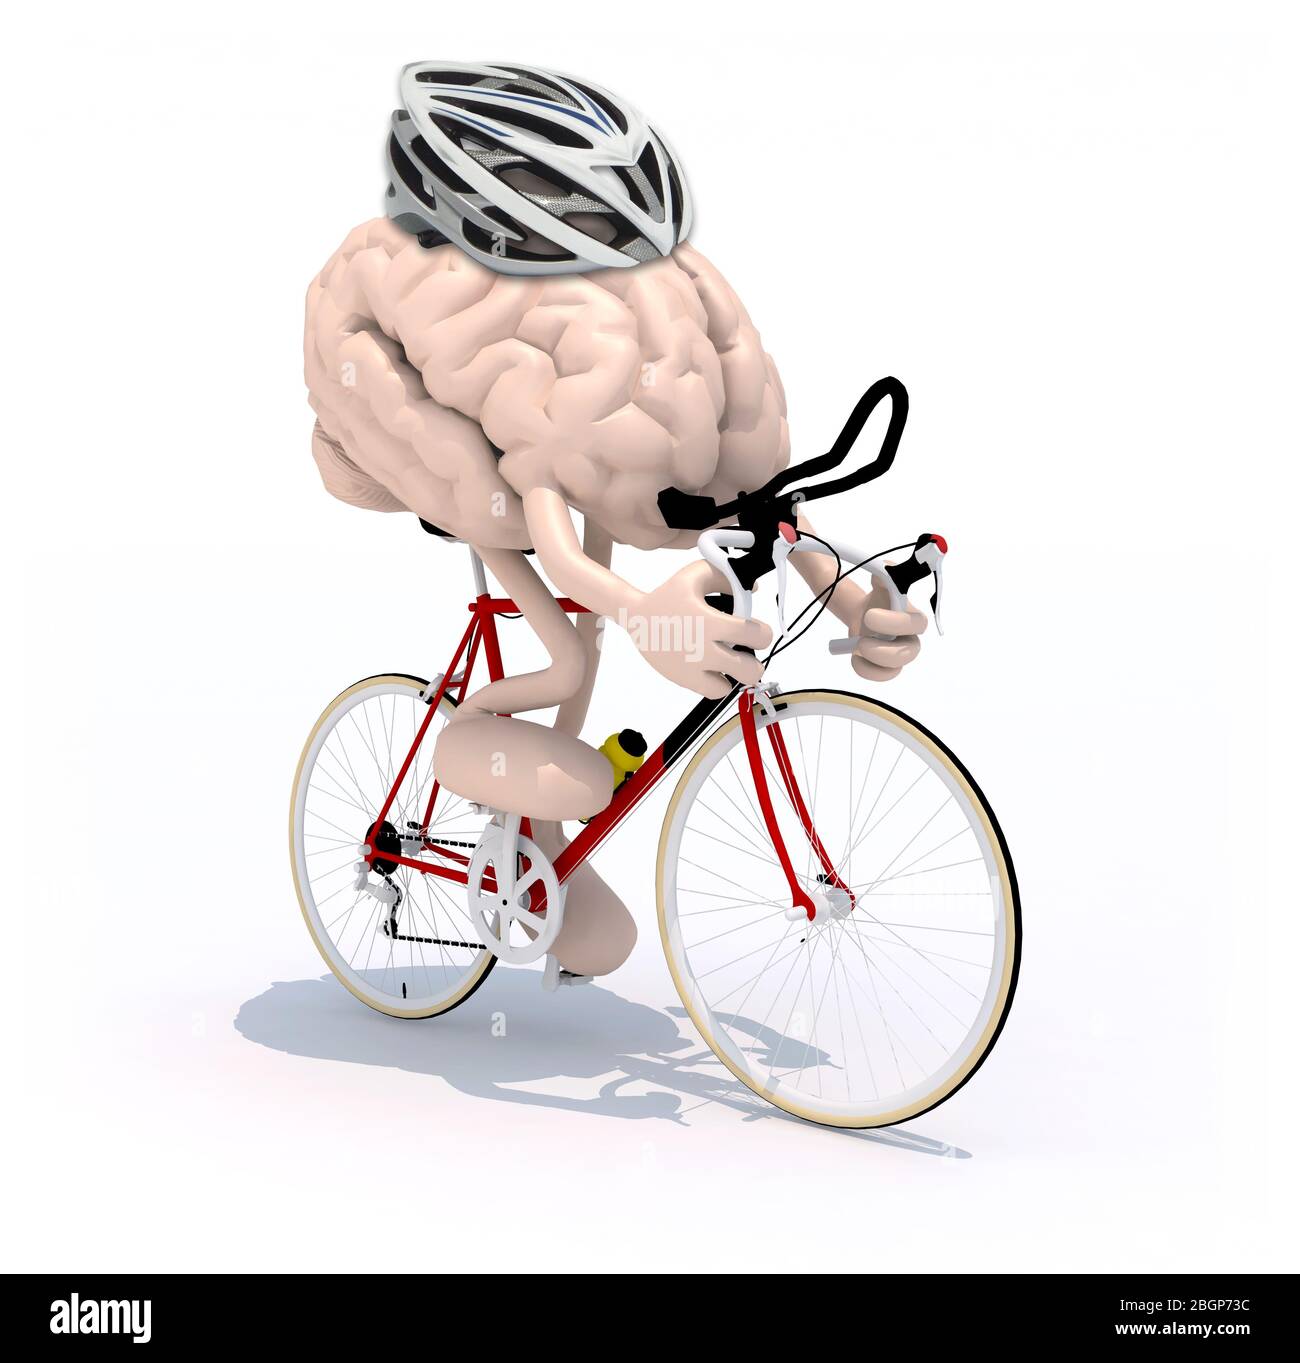 dibujos animados del cerebro humano con brazos y piernas en bicicleta de  carreras, ilustración en 3d Fotografía de stock - Alamy